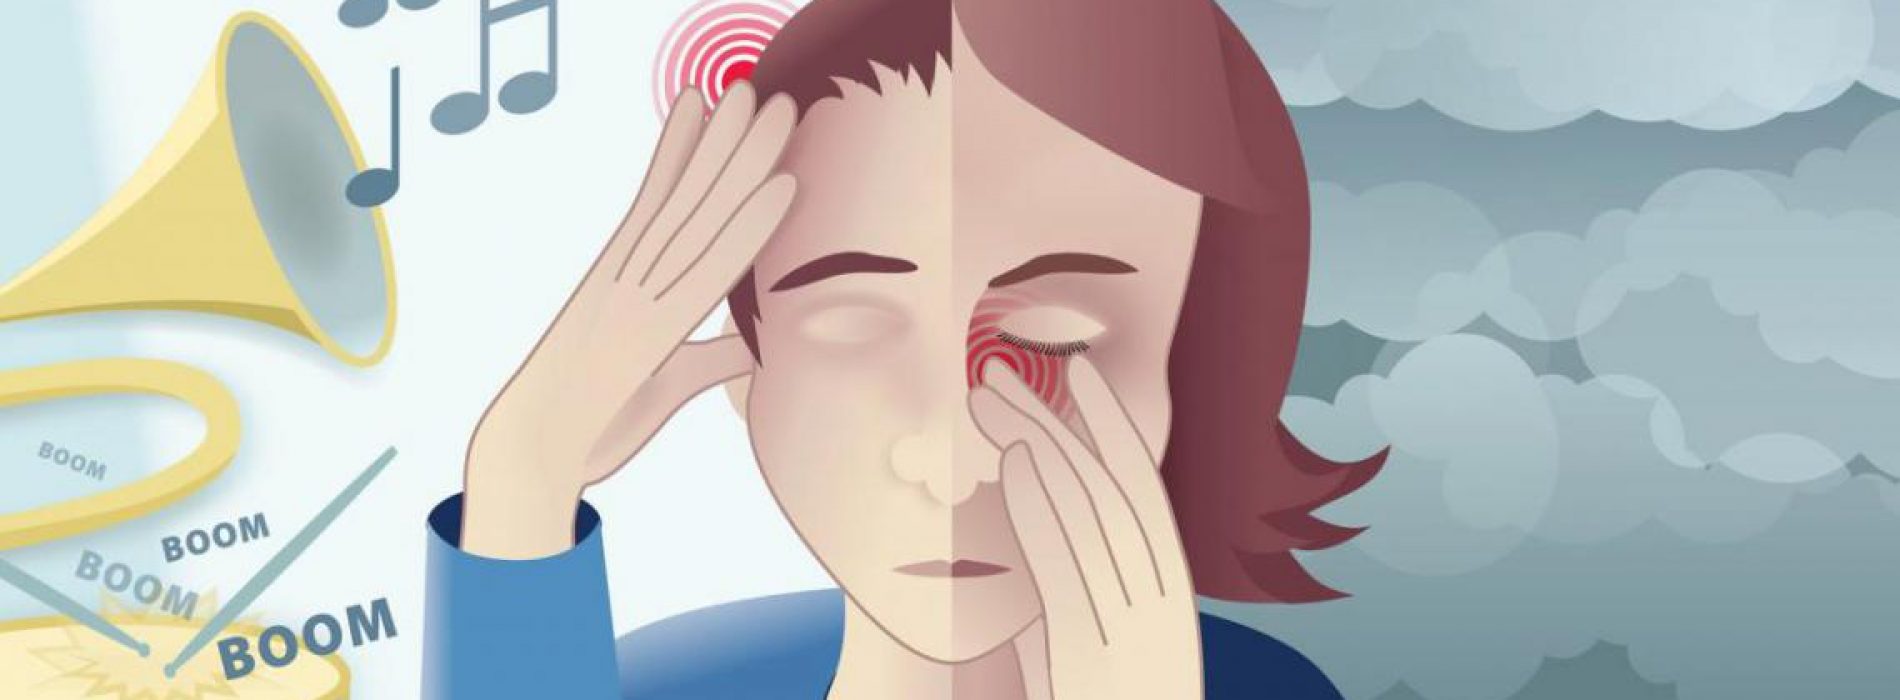 Top zes remedies voor natuurlijke migraine verlichting